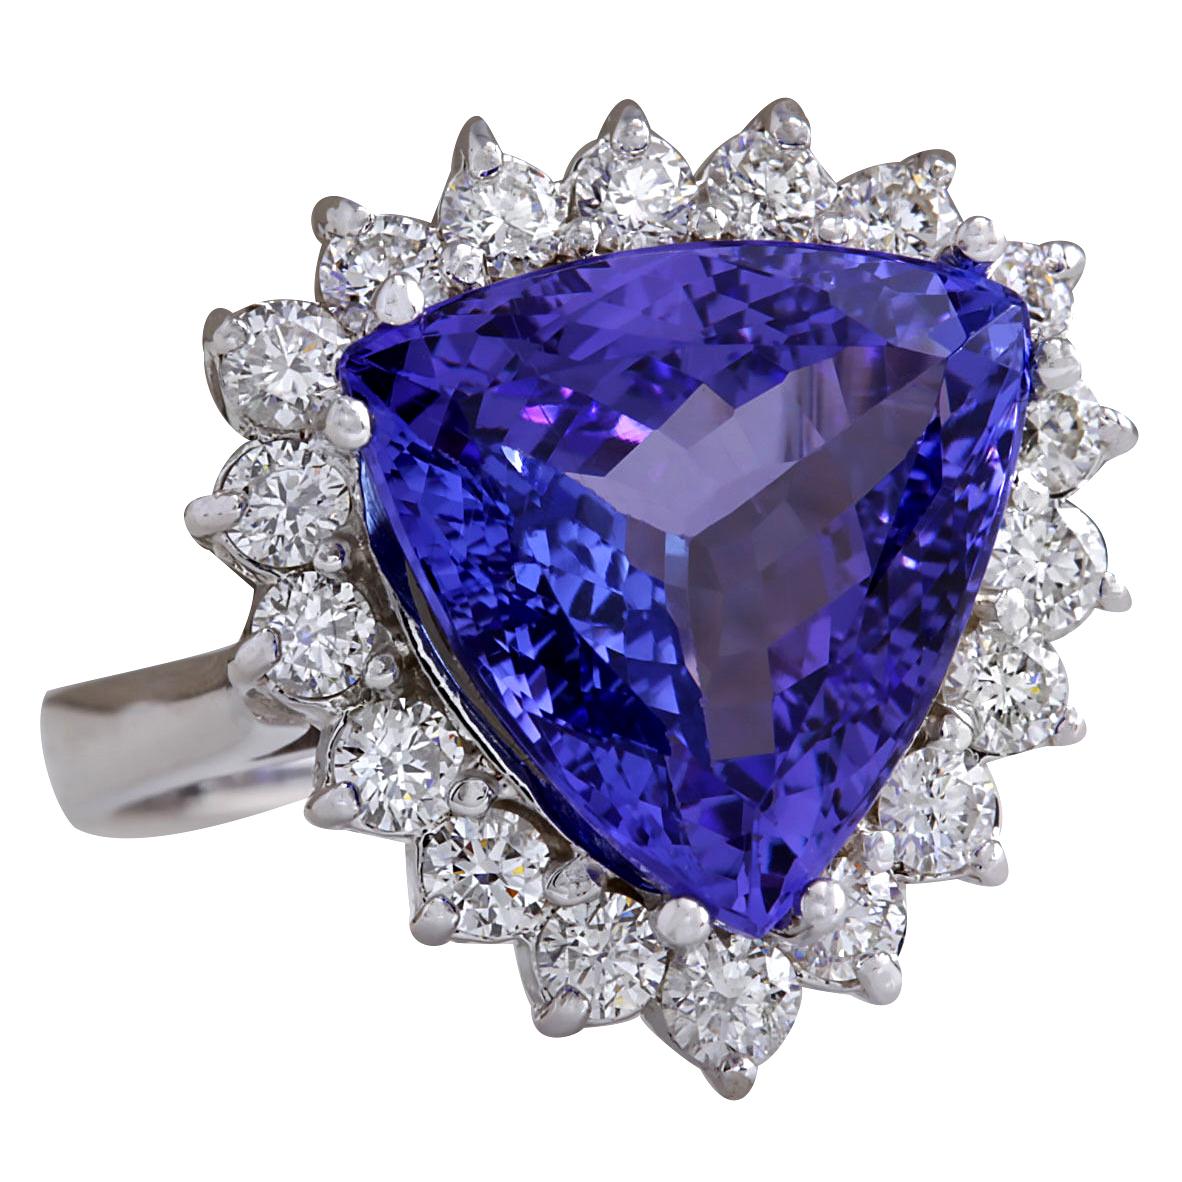 8.12 Carat Tanzanite 14 Karat White Gold Diamond Ring
Stamped: 14K White Gold
Total Ring Weight: 6.8 Grams
Tanzanite Weight is 7.22 Carat (Measures: 12.00x12.00 mm)
Color: Blue
Diamond Weight is 0.90 Carat
Color: F-G, Clarity: VS2-SI1
Face Measures: